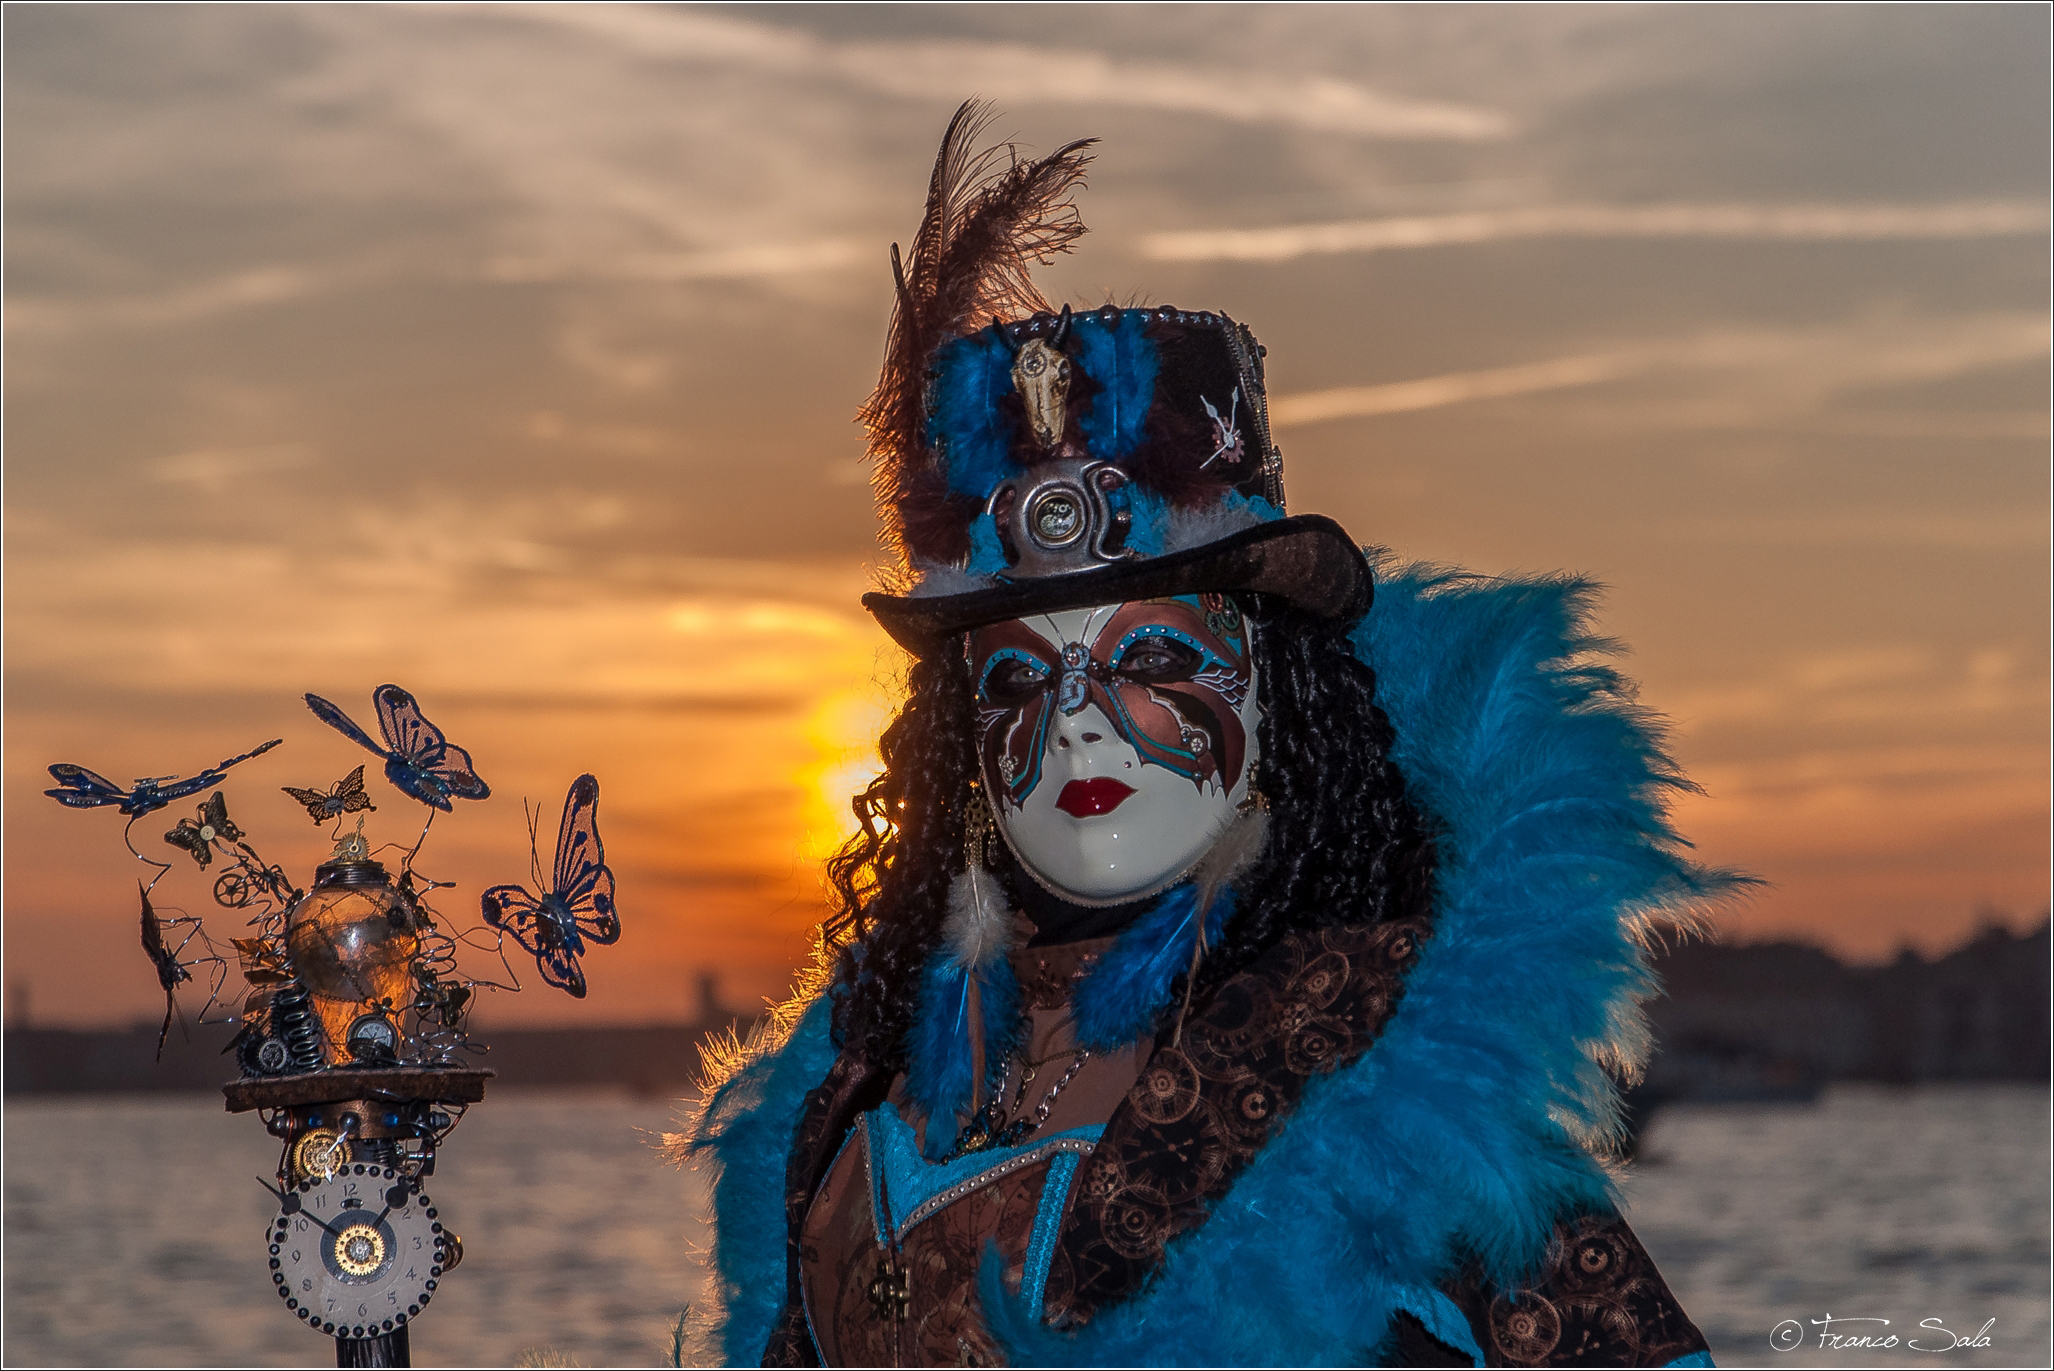 Venetian Masks Carnival 2019...